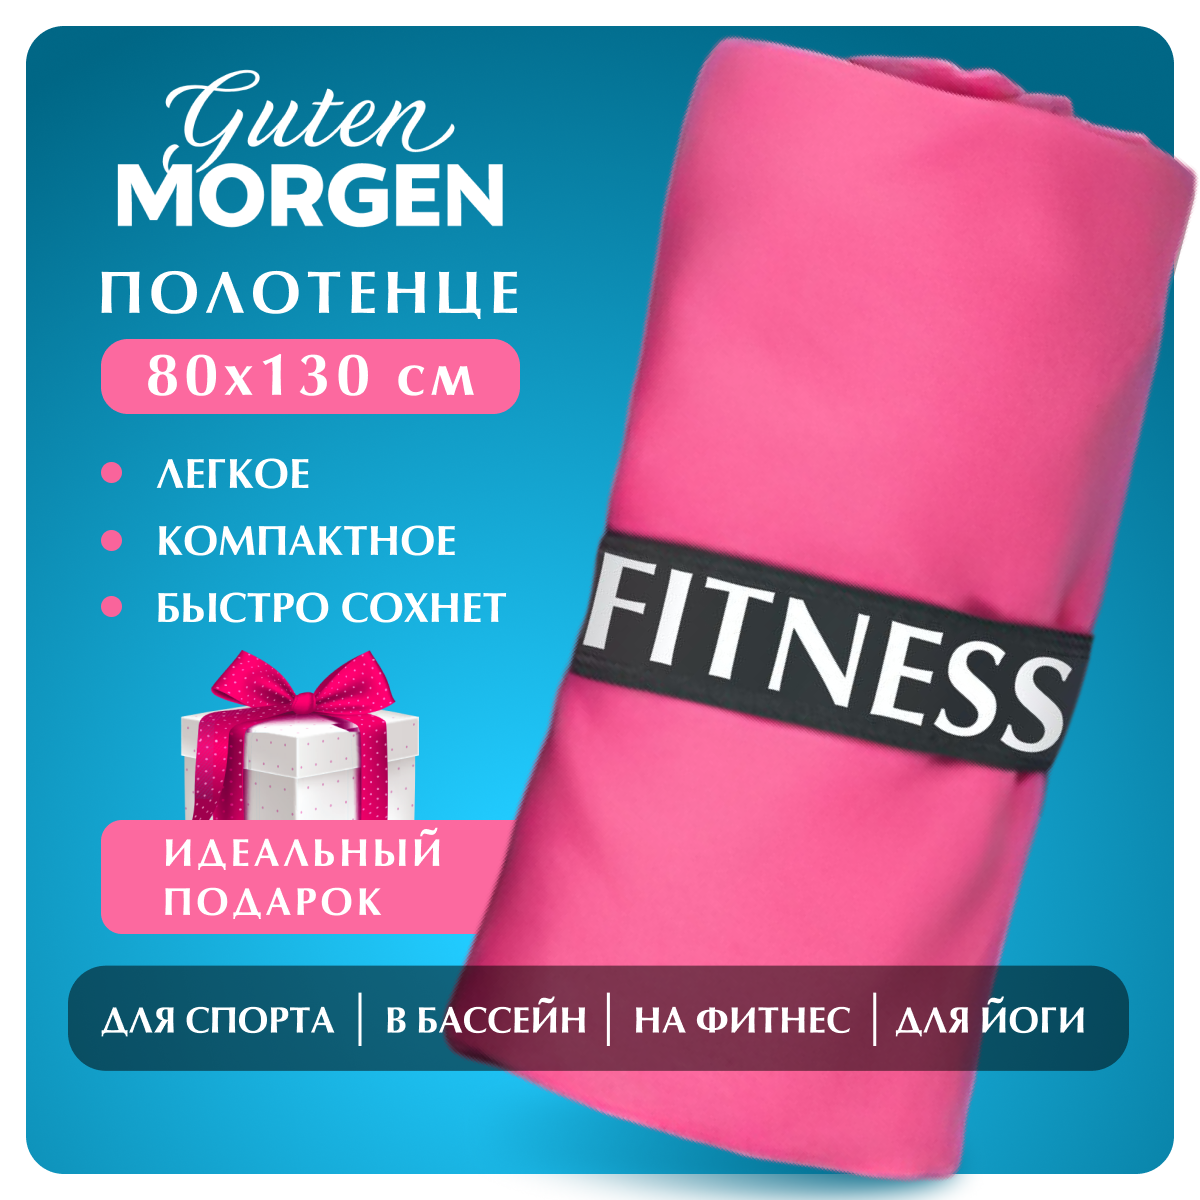 Полотенце, Guten Morgen, Микрофибра, Fitness, Цвет: Фламинго, 80х130 см